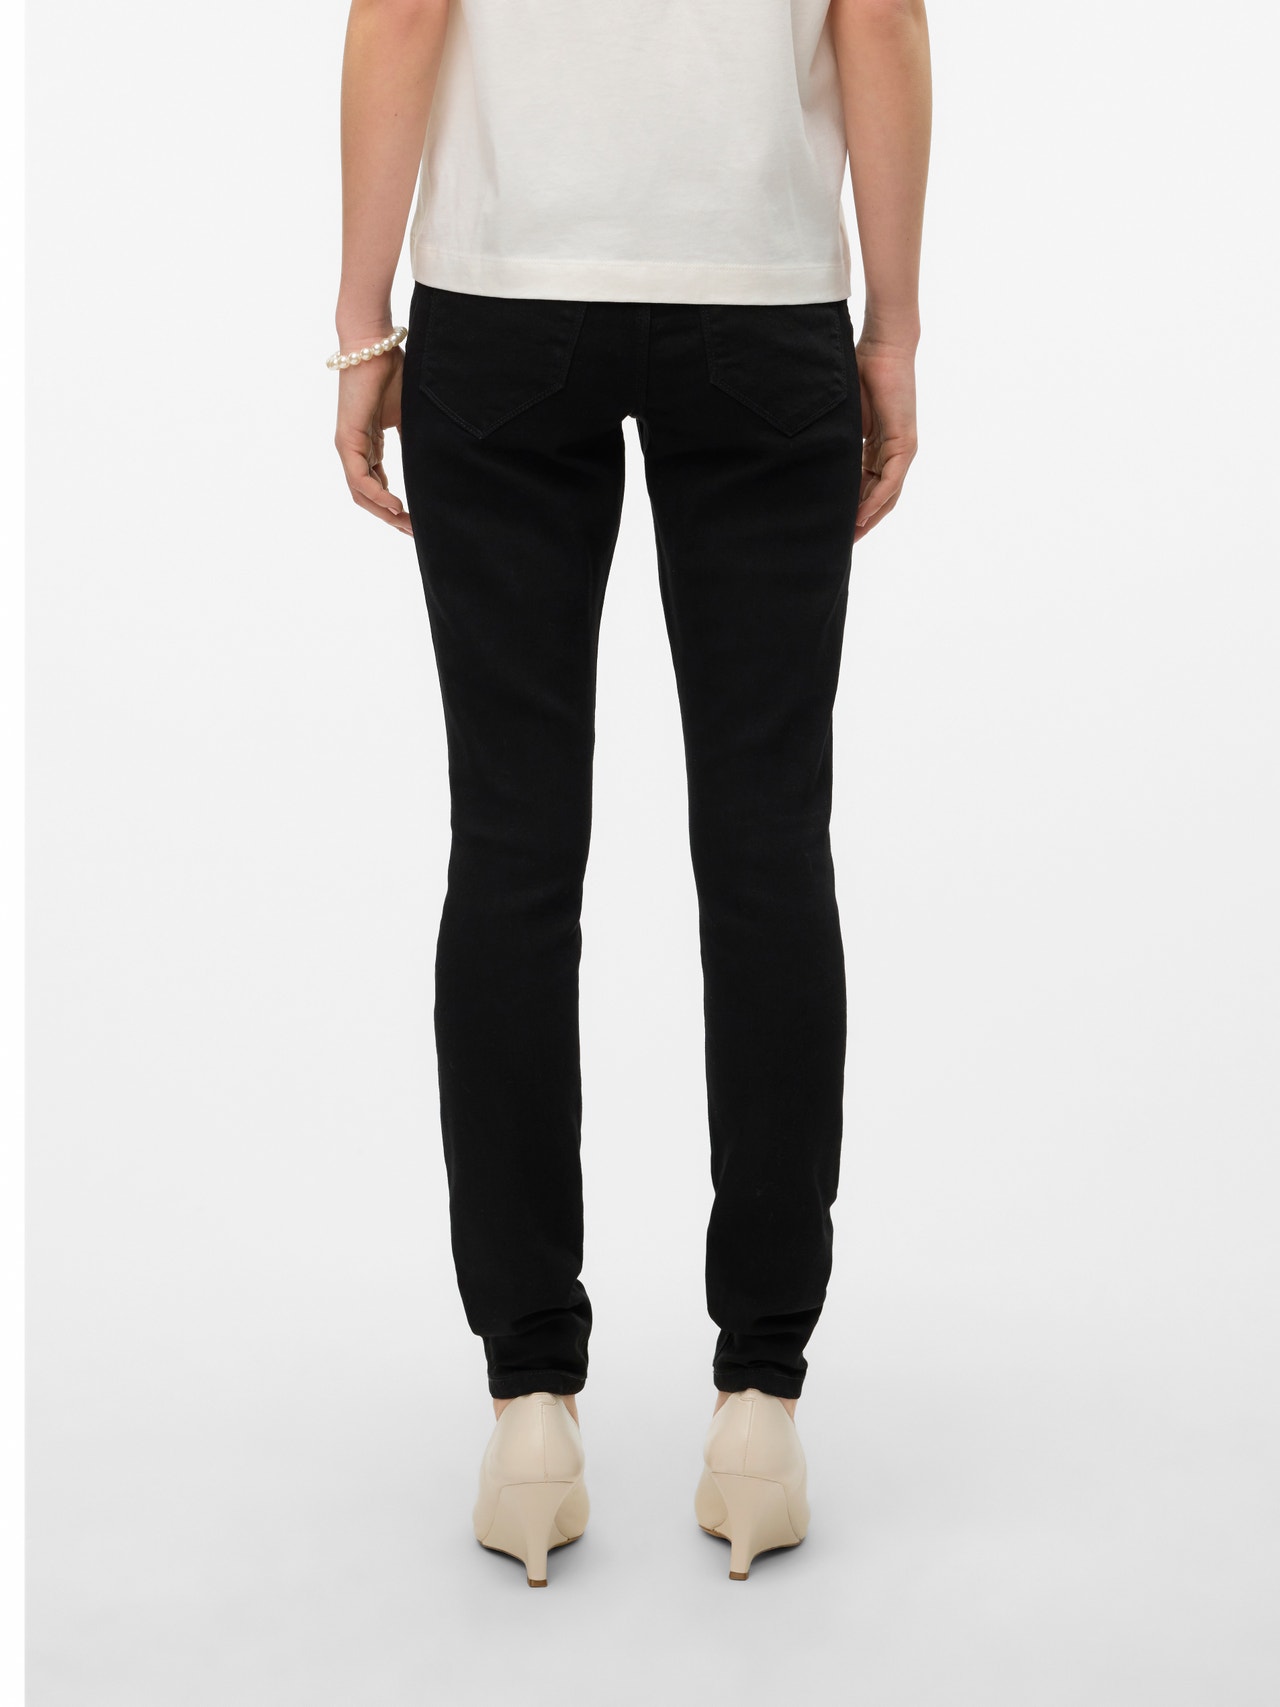 Vero Moda VMELLY Skinny Fit Jeans -Black - 10310691